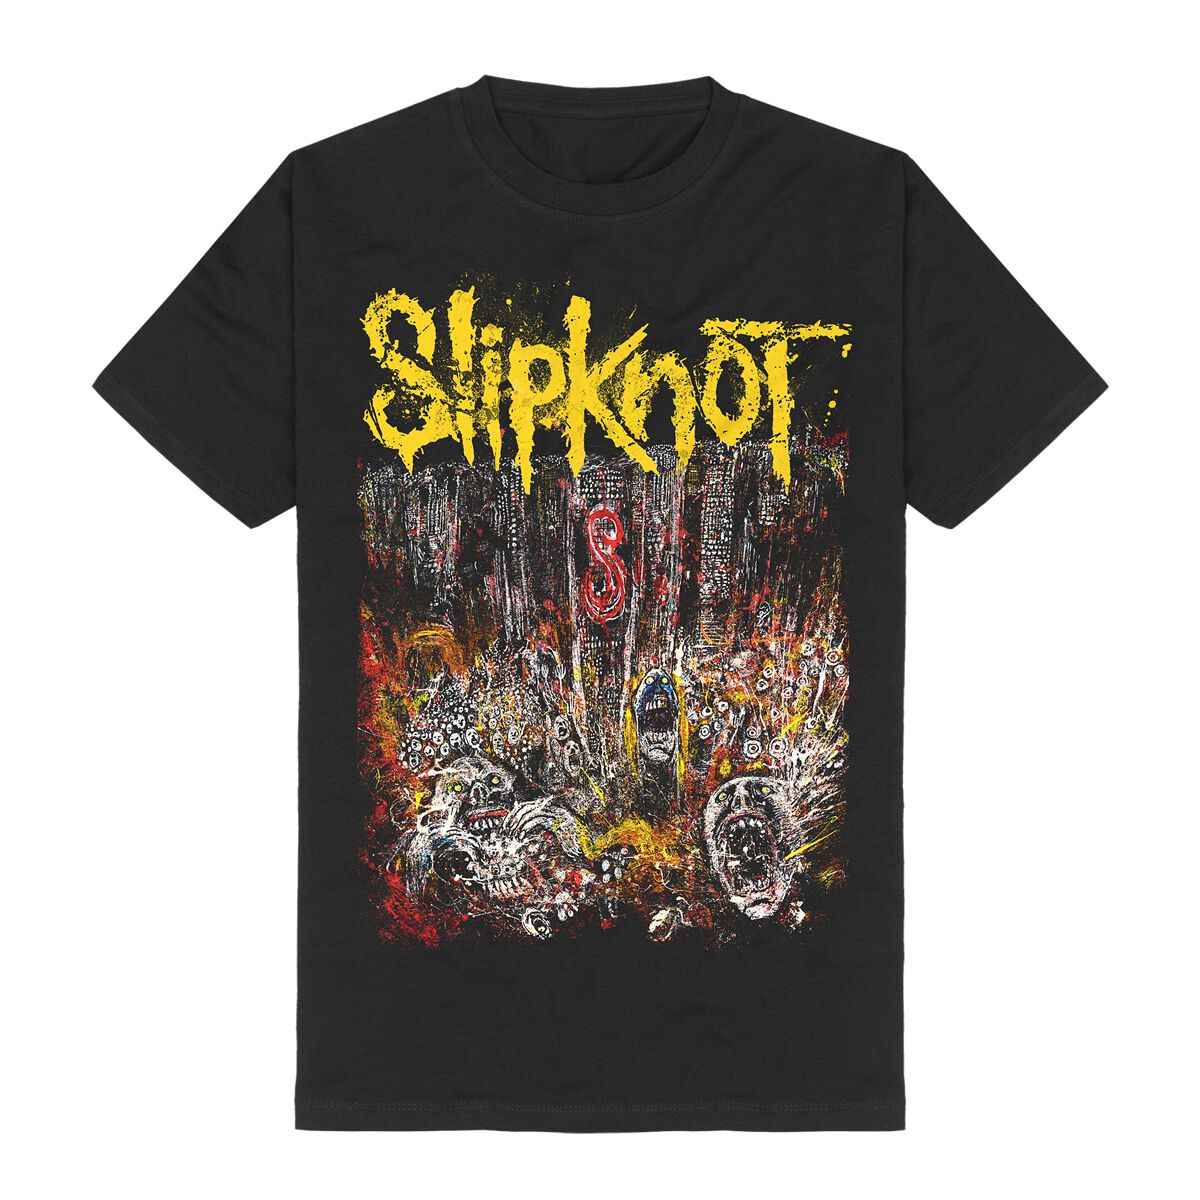 Slipknot T-Shirt - MSG Painting - S bis 4XL - für Männer - Größe 4XL - schwarz  - Lizenziertes Merchandise!